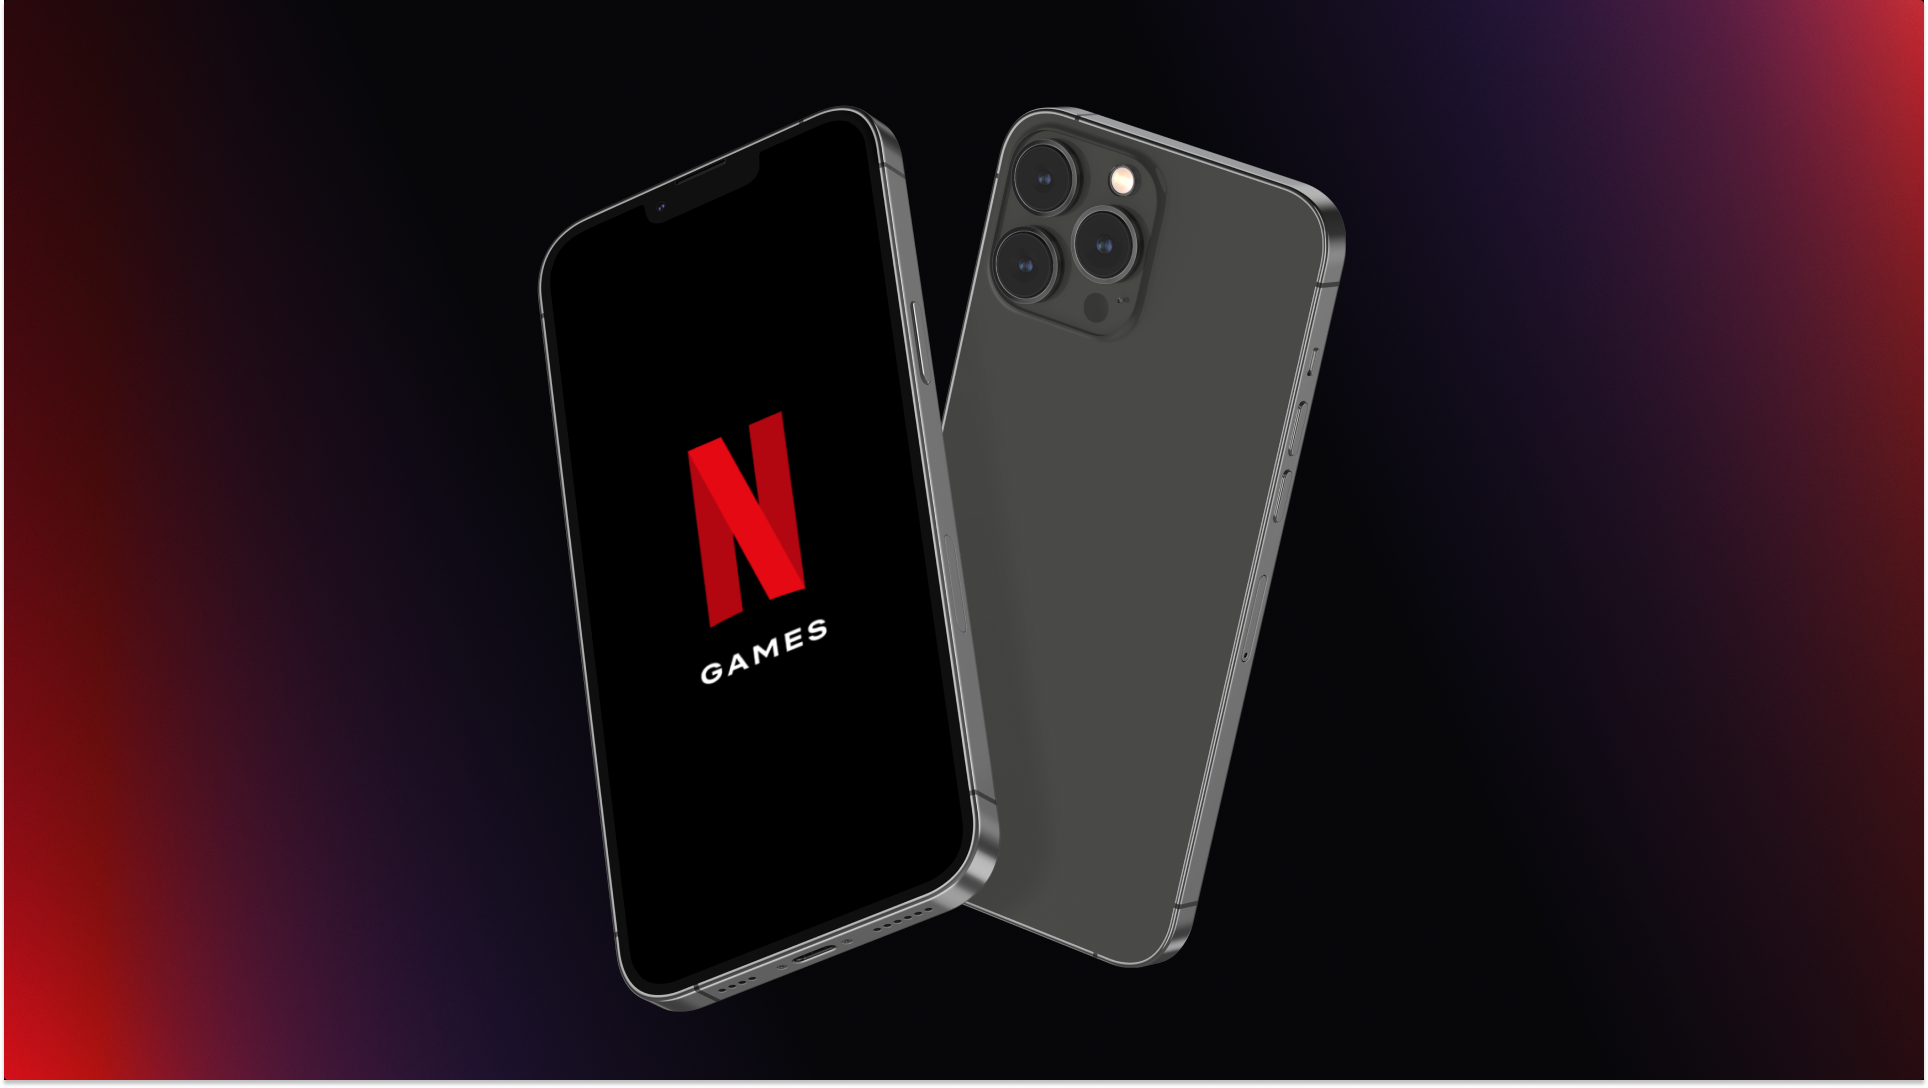 Jogos na Netflix: como jogar grátis em um smartphone Android